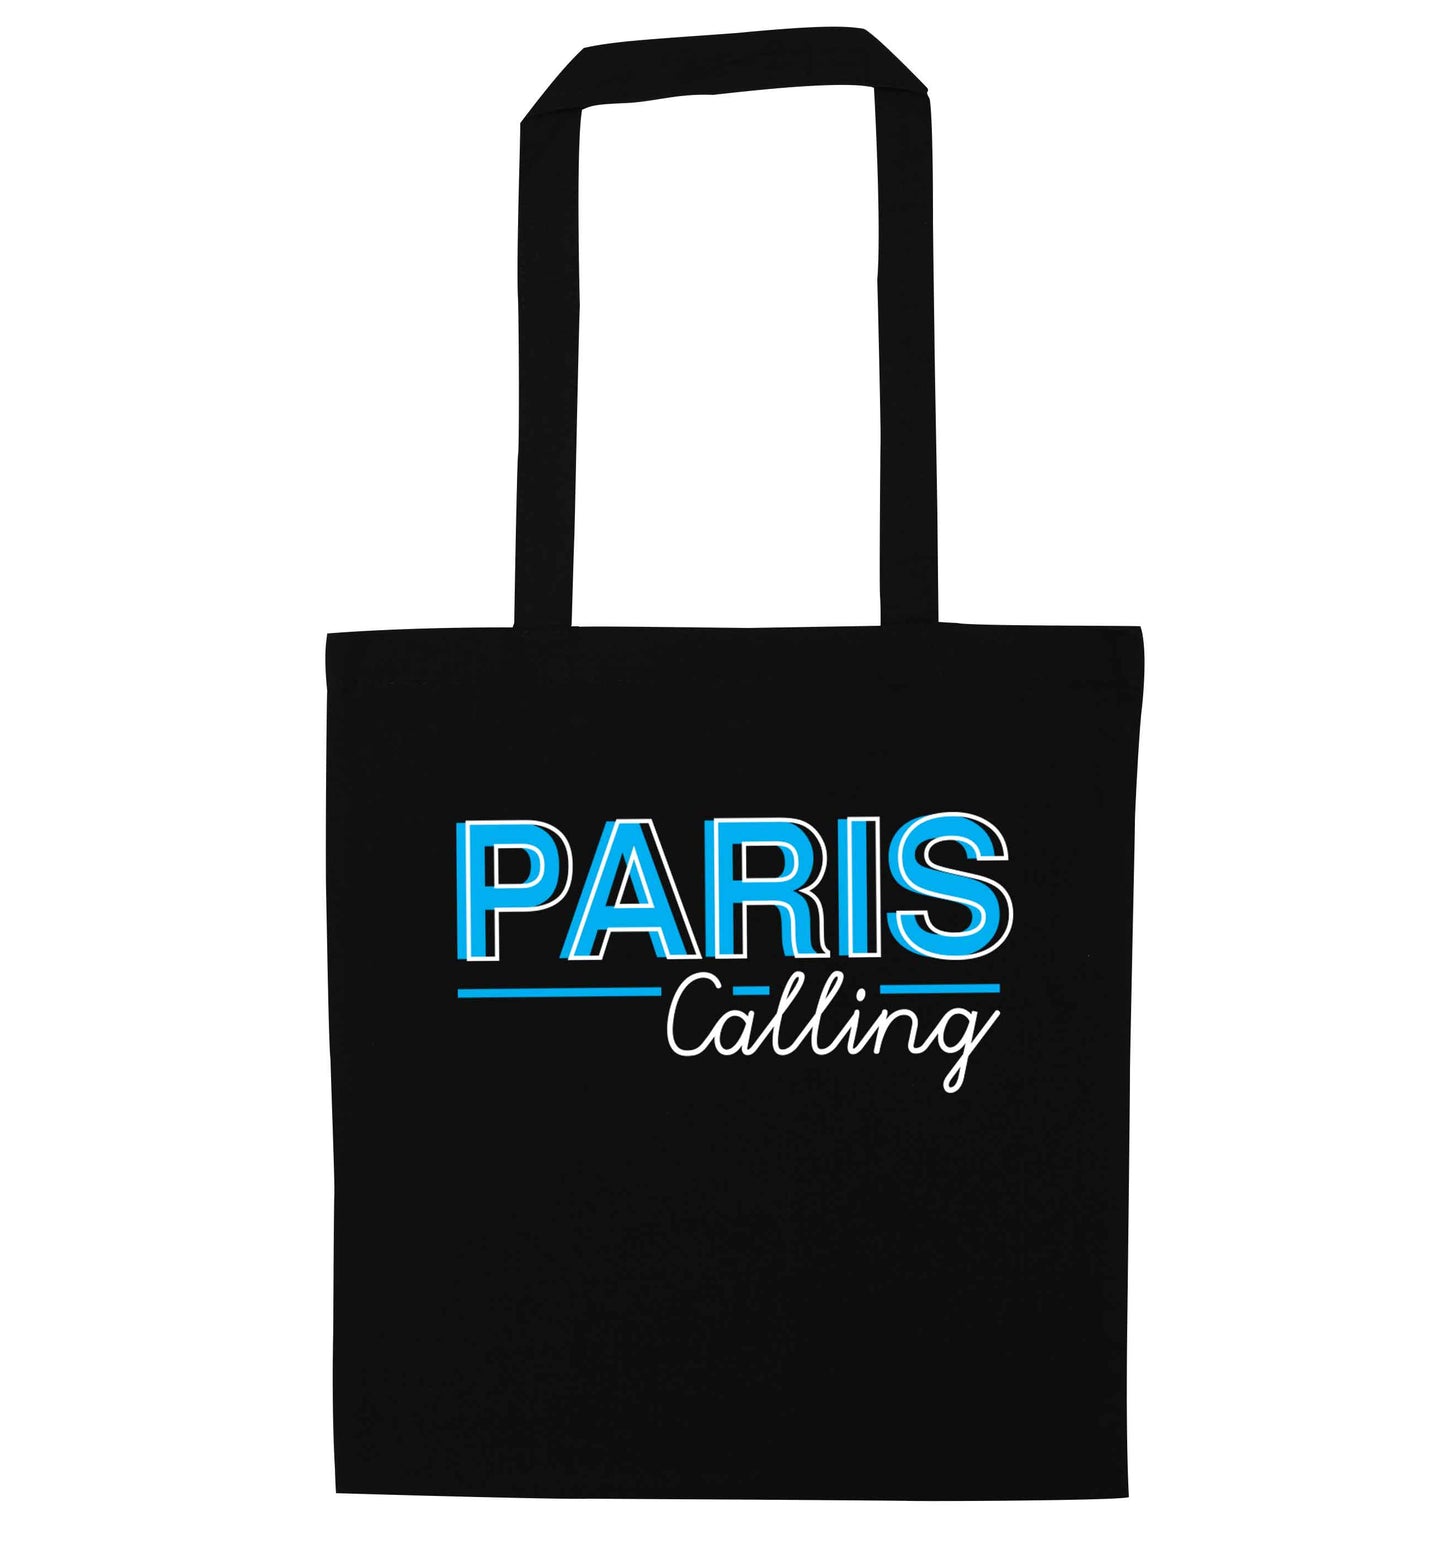 Paris calling black tote bag